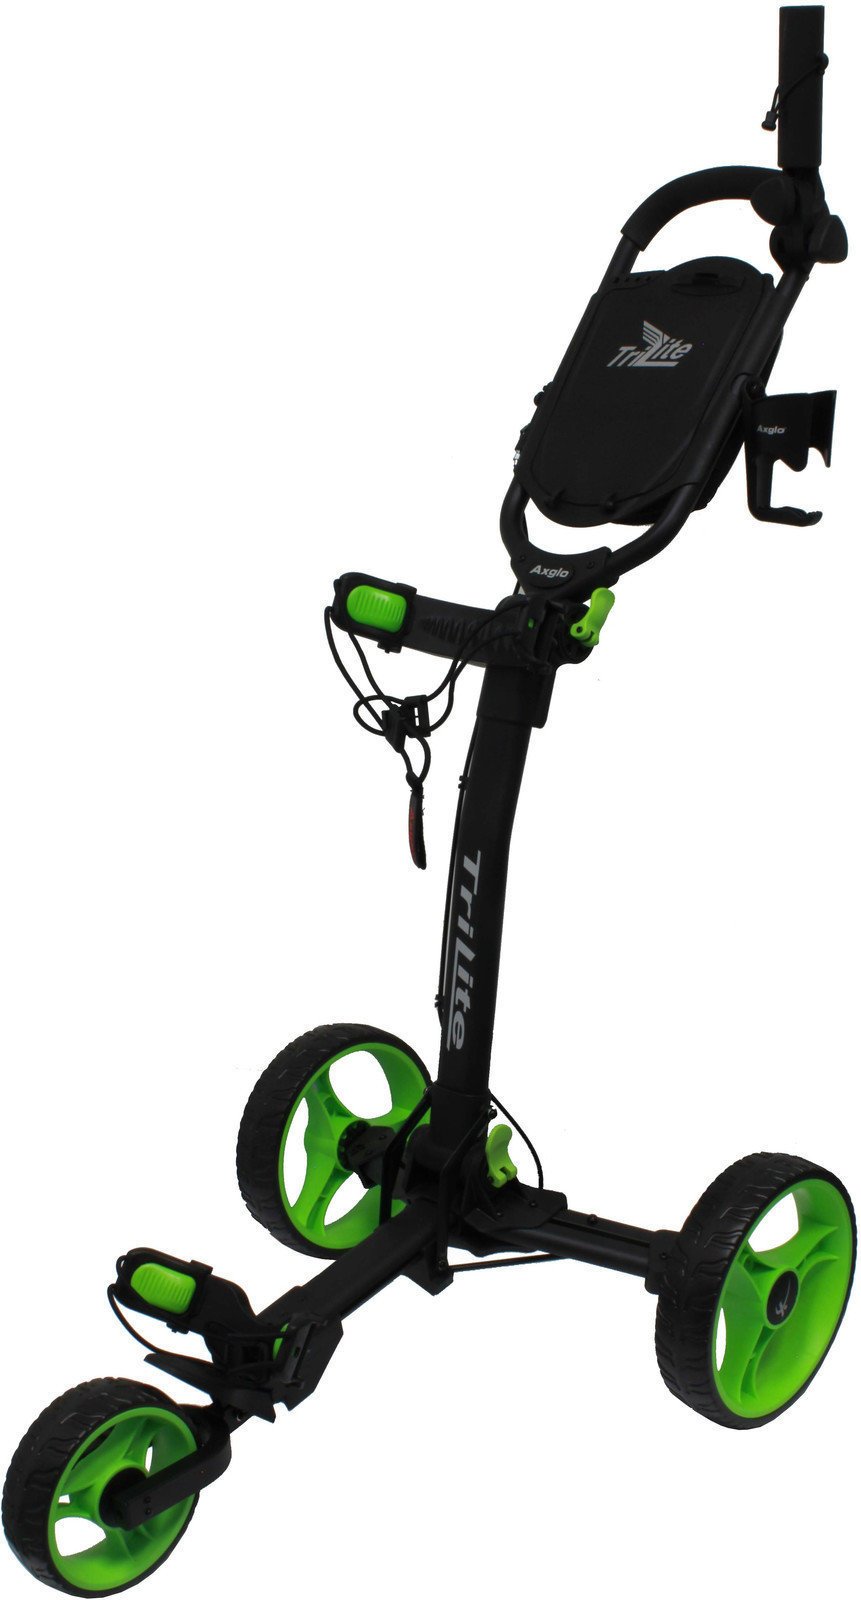 Ръчна количка за голф Axglo TriLite Black/Green Ръчна количка за голф